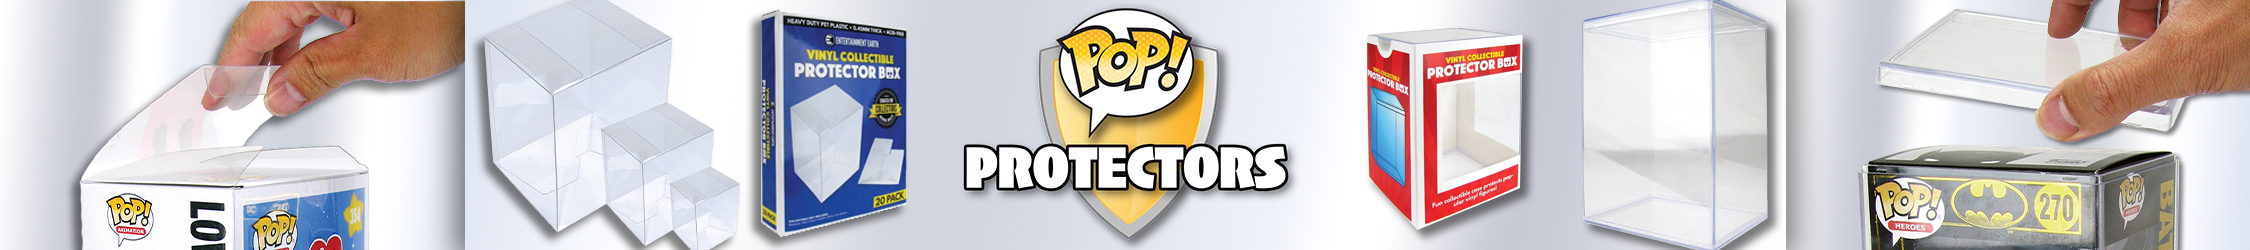 Pop Protectors